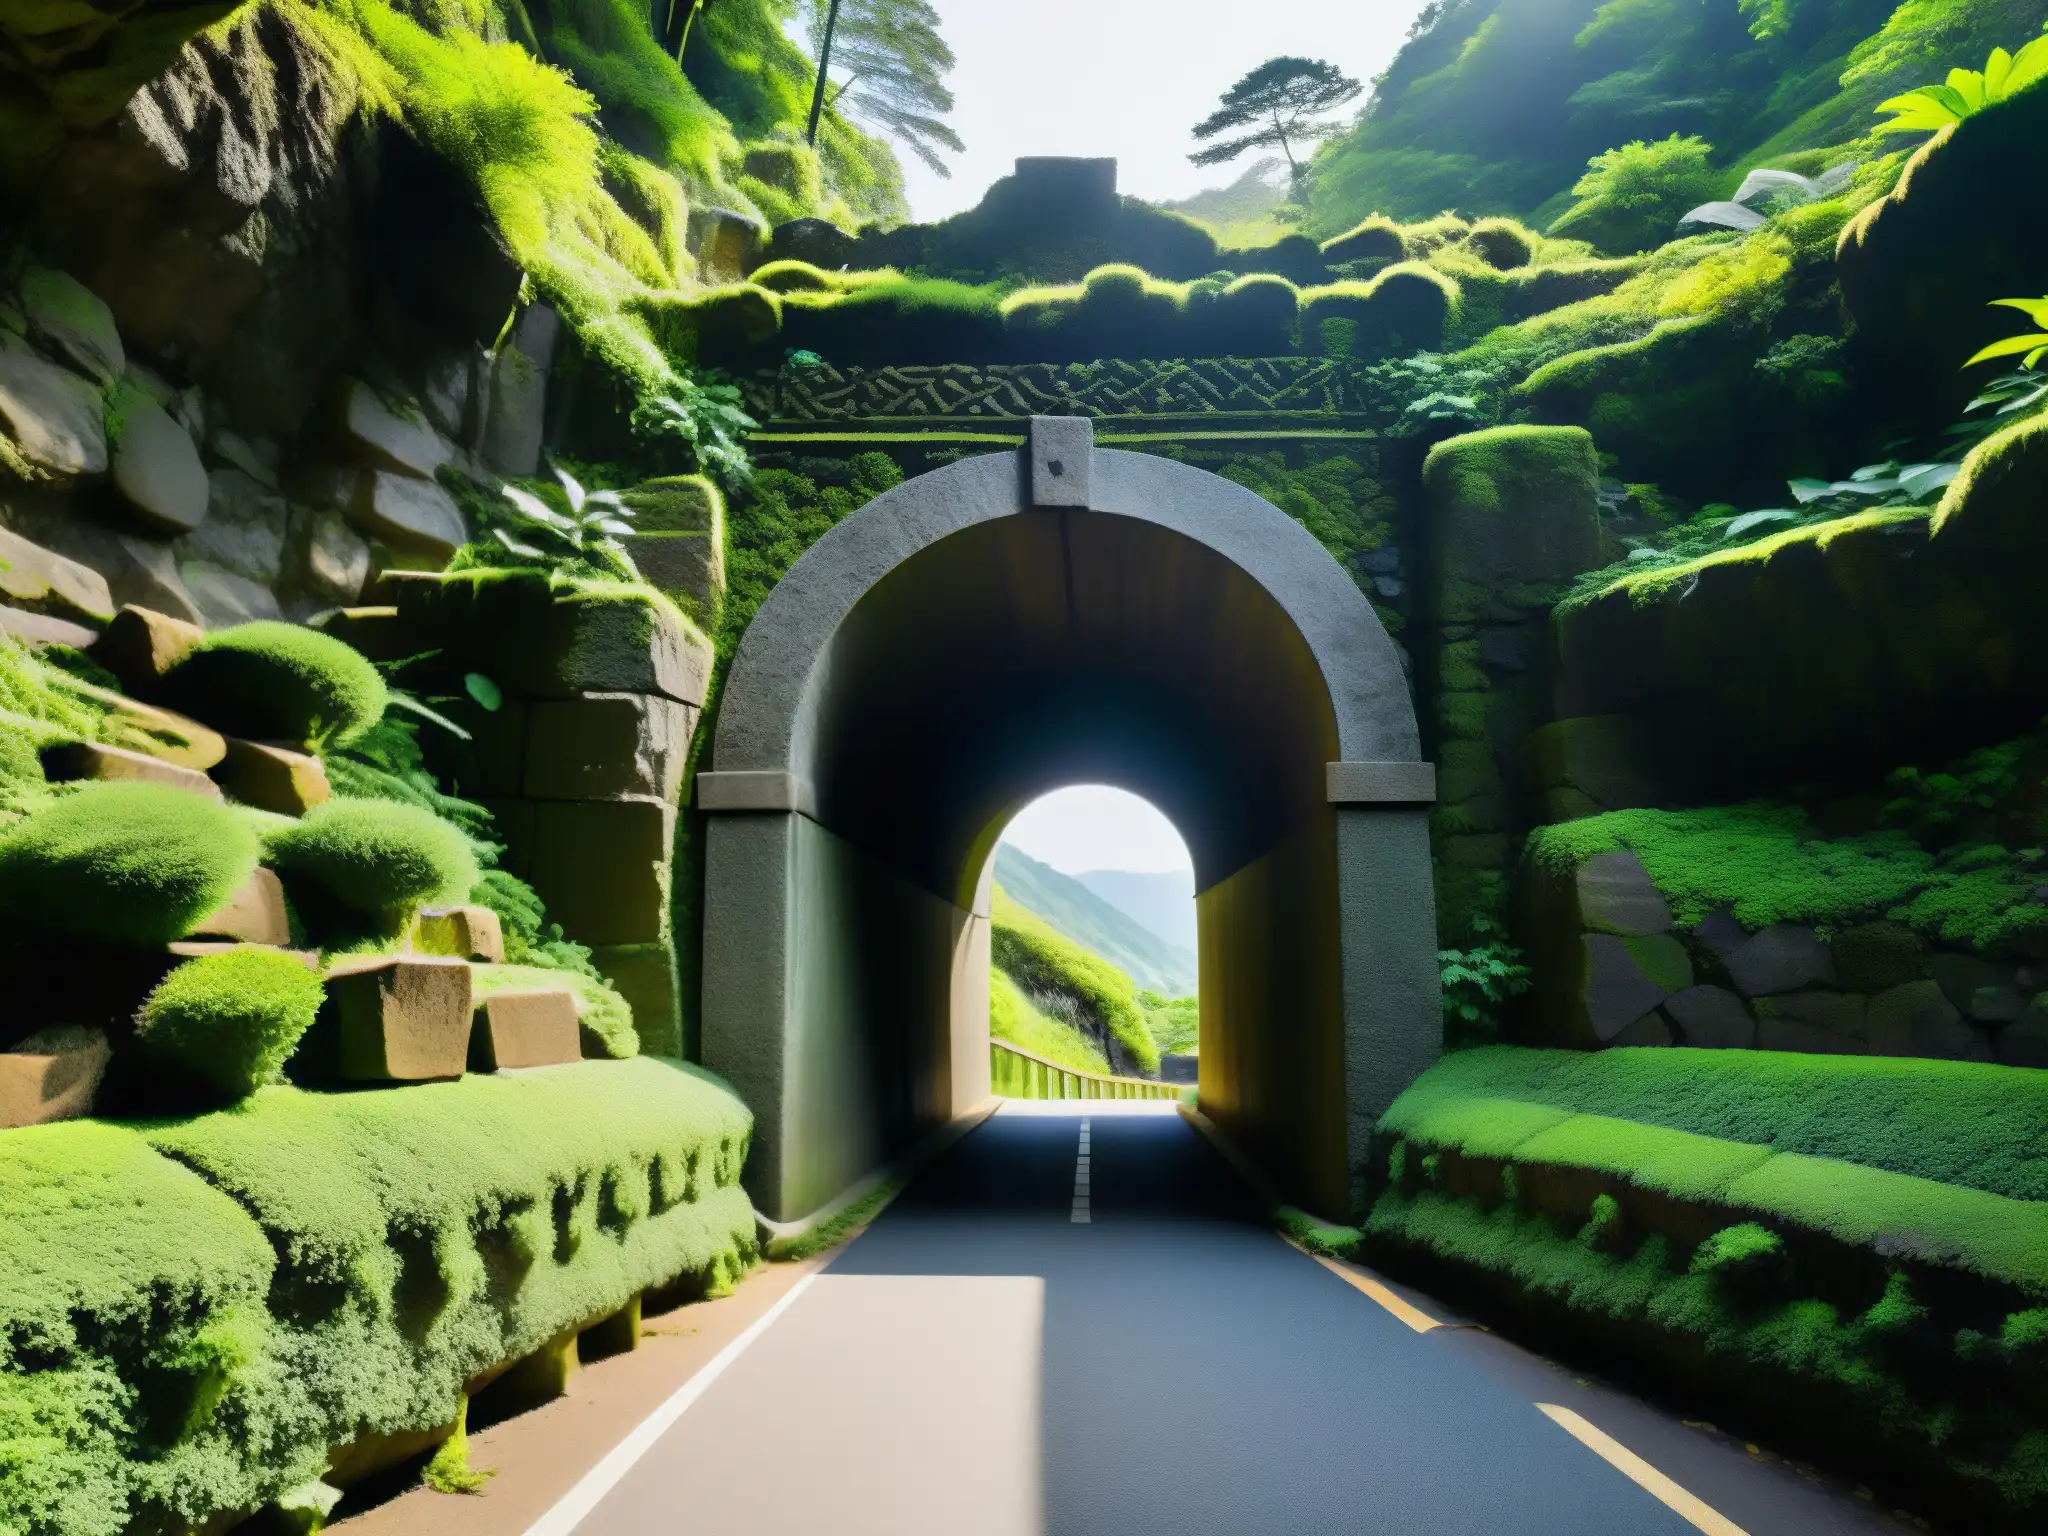 Entrada del túnel Saruhashi envuelta en musgo y misterio, evocando mitos y leyendas urbanas Saruhashi